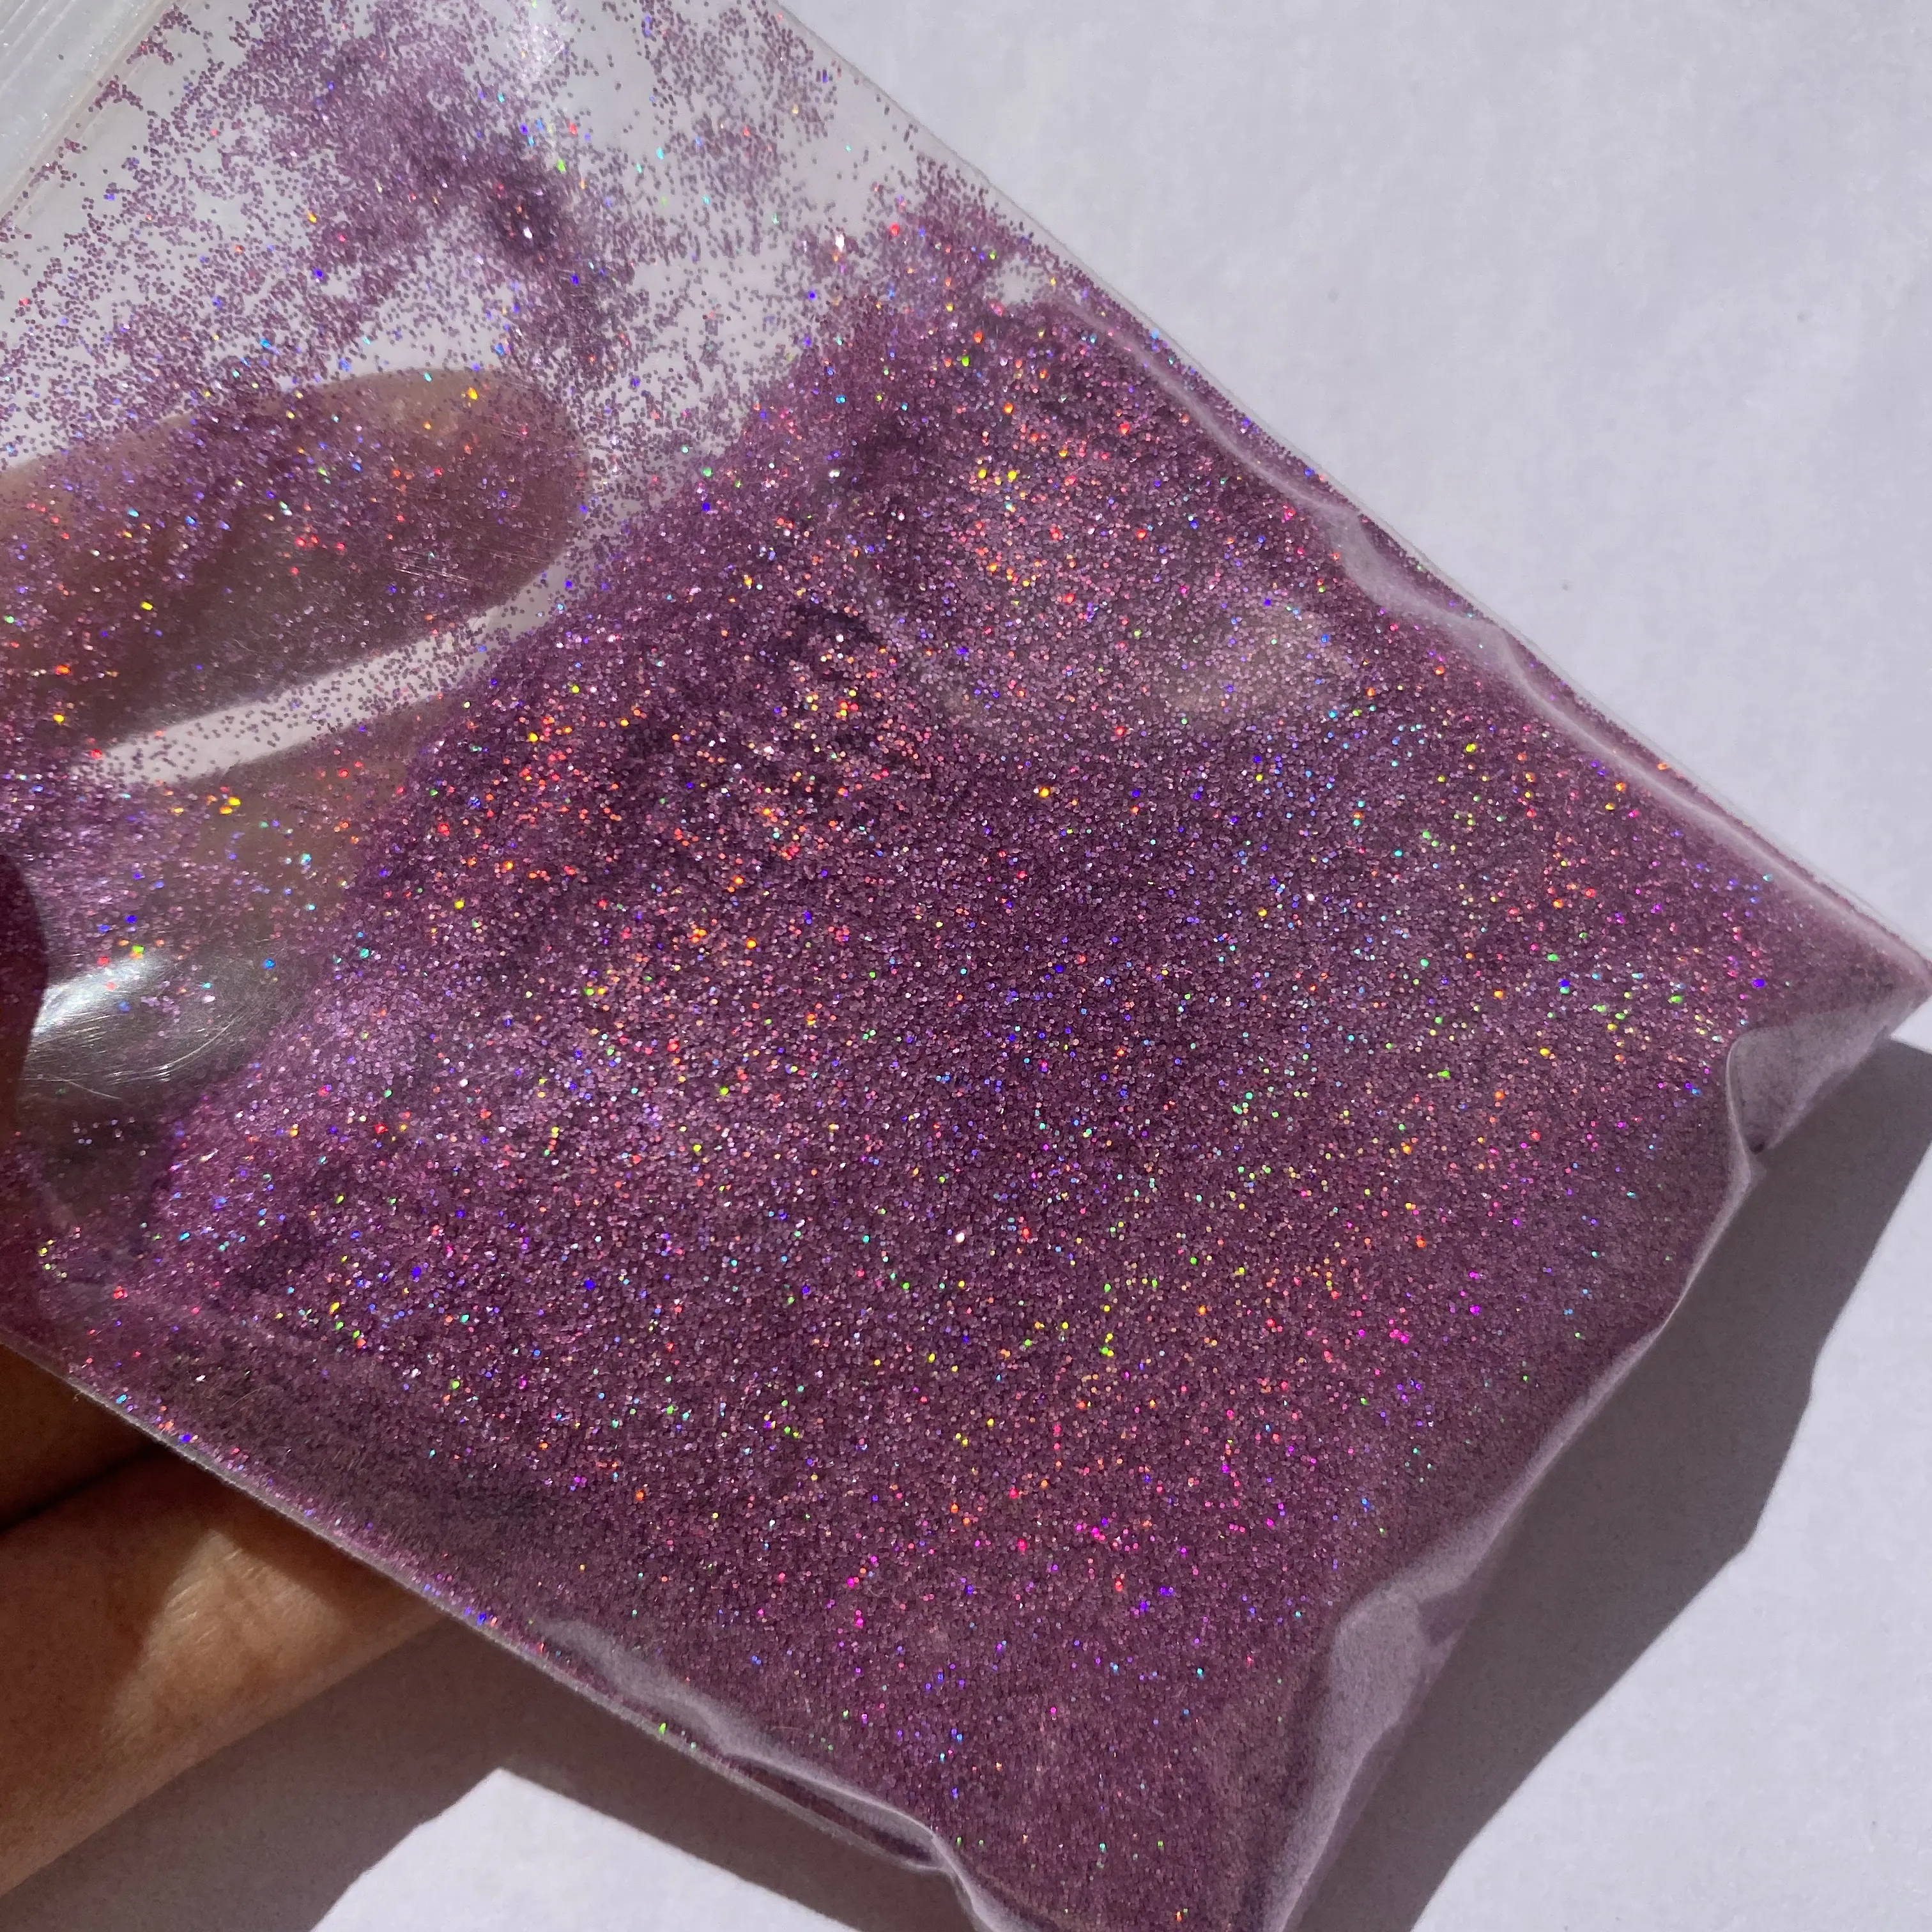 Fabricant de paillettes fines cosmétiques violettes irisées scintillantes